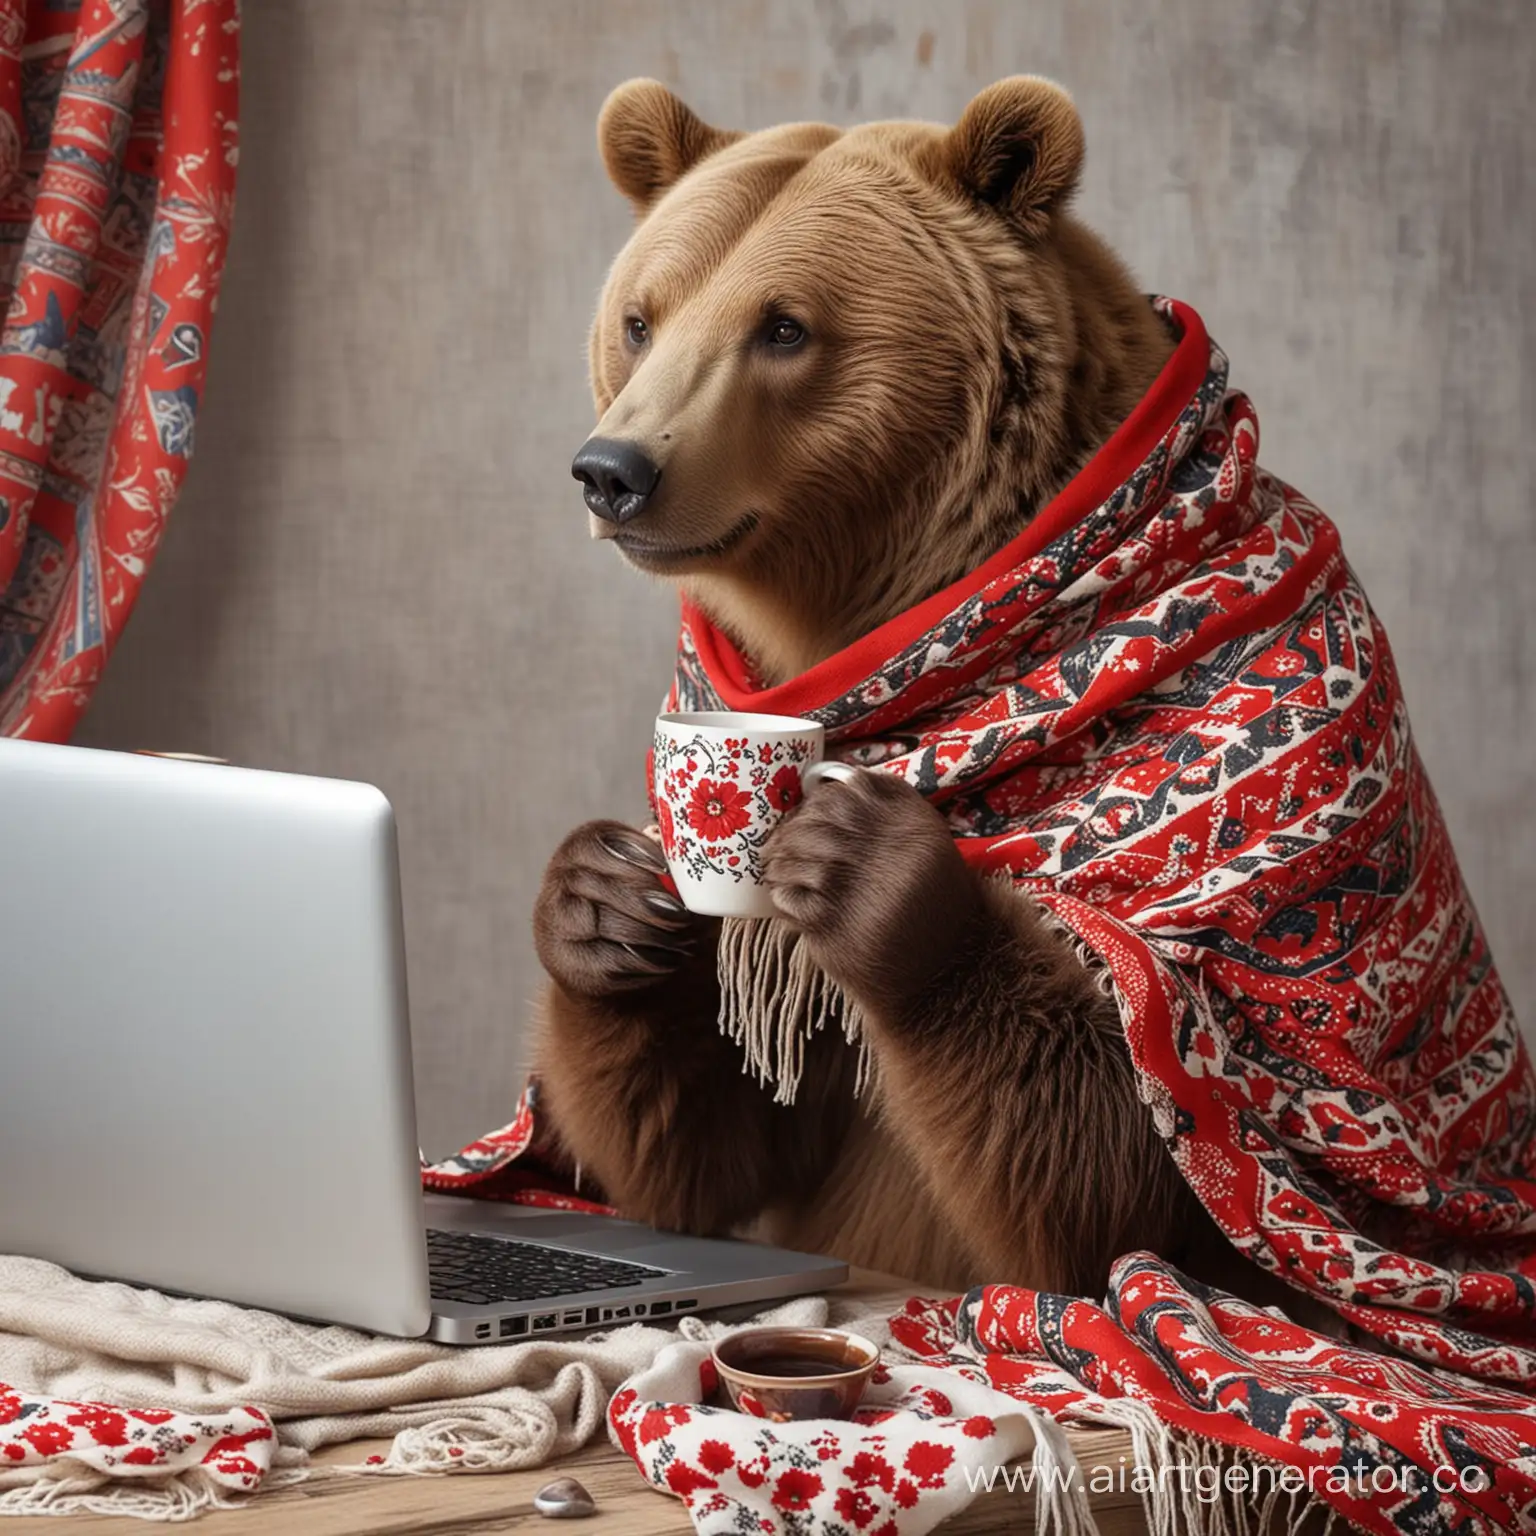 бурый медведь в русском платке с узорами работает за компьютером и пьет чай